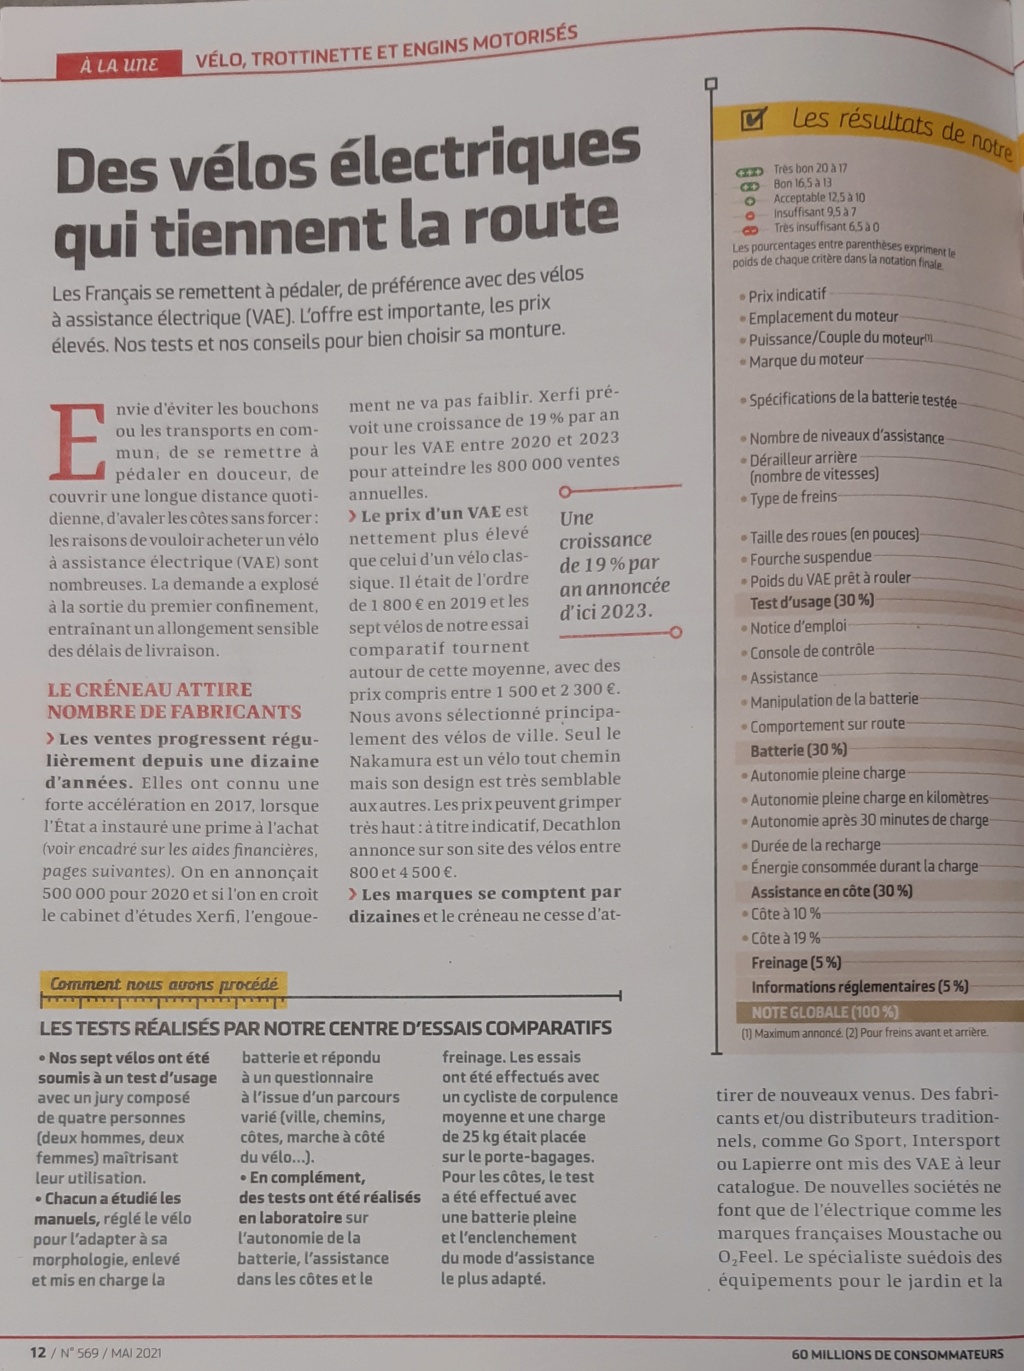 Engin electric de l'IUT de l' Aisne: 2019 2021...reflexion mobilité - Page 38 20210621